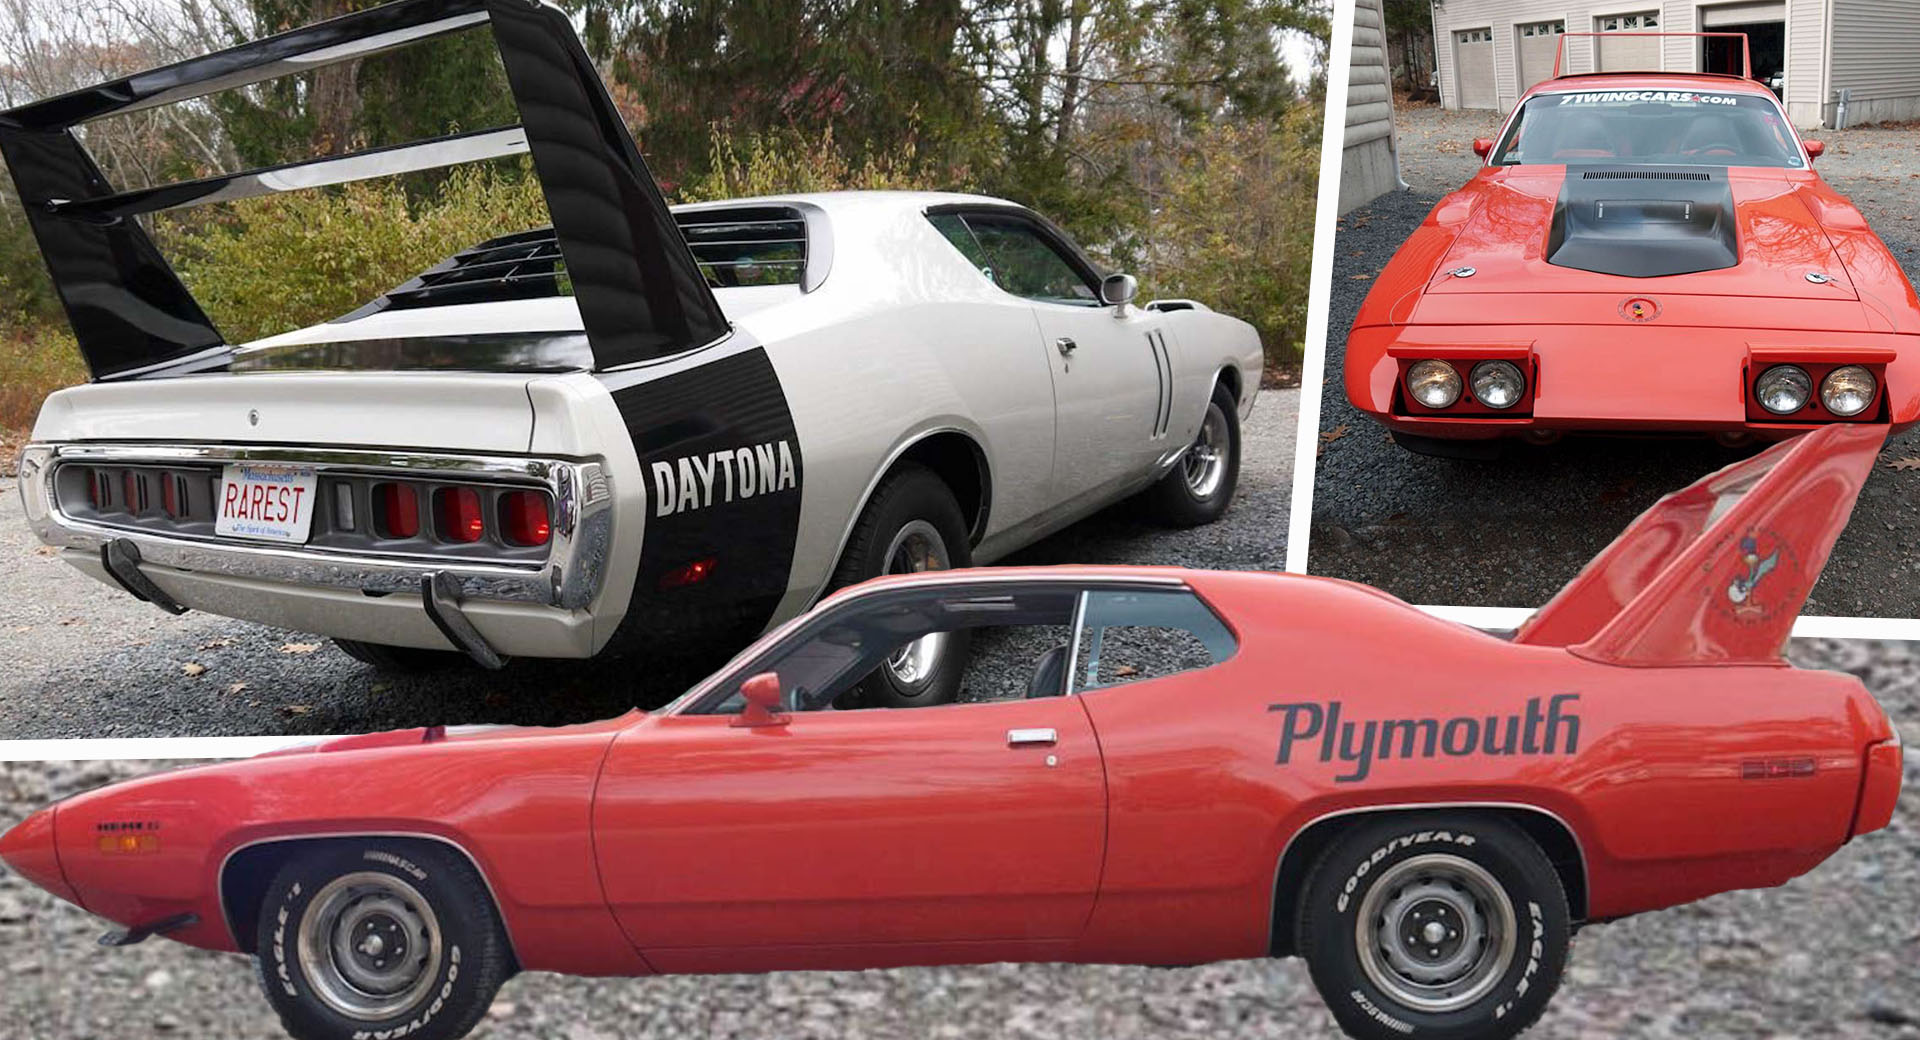 Voici à quoi auraient ressemblé les jumelles Axed 1971 Daytona et Superbird NASCAR de Chrysler